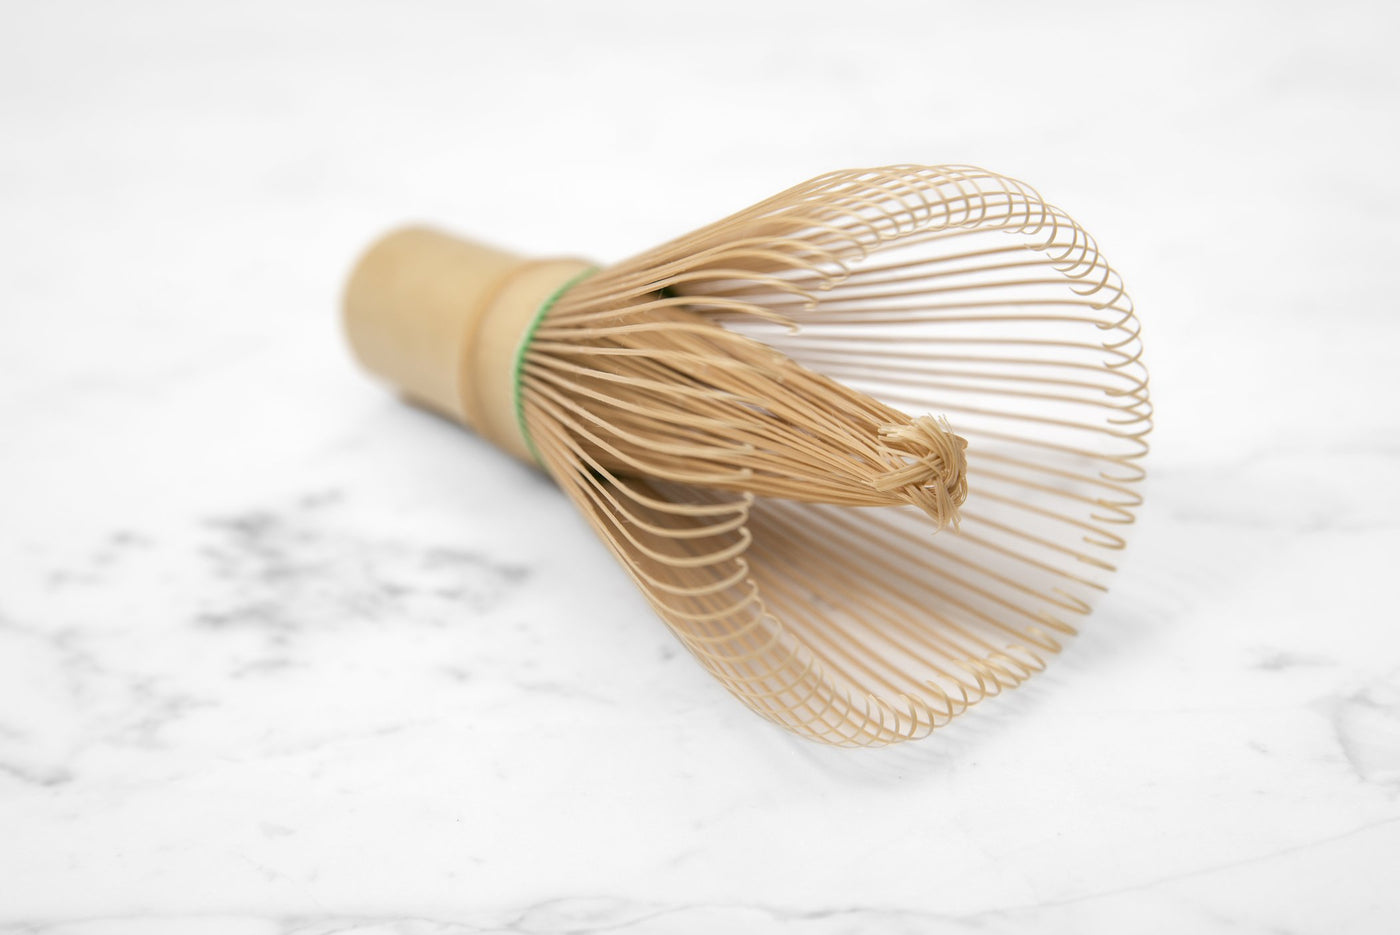 le fouet est en bambou doré et fabriqué à partir d'une seule pièce de bambou taillée à la main